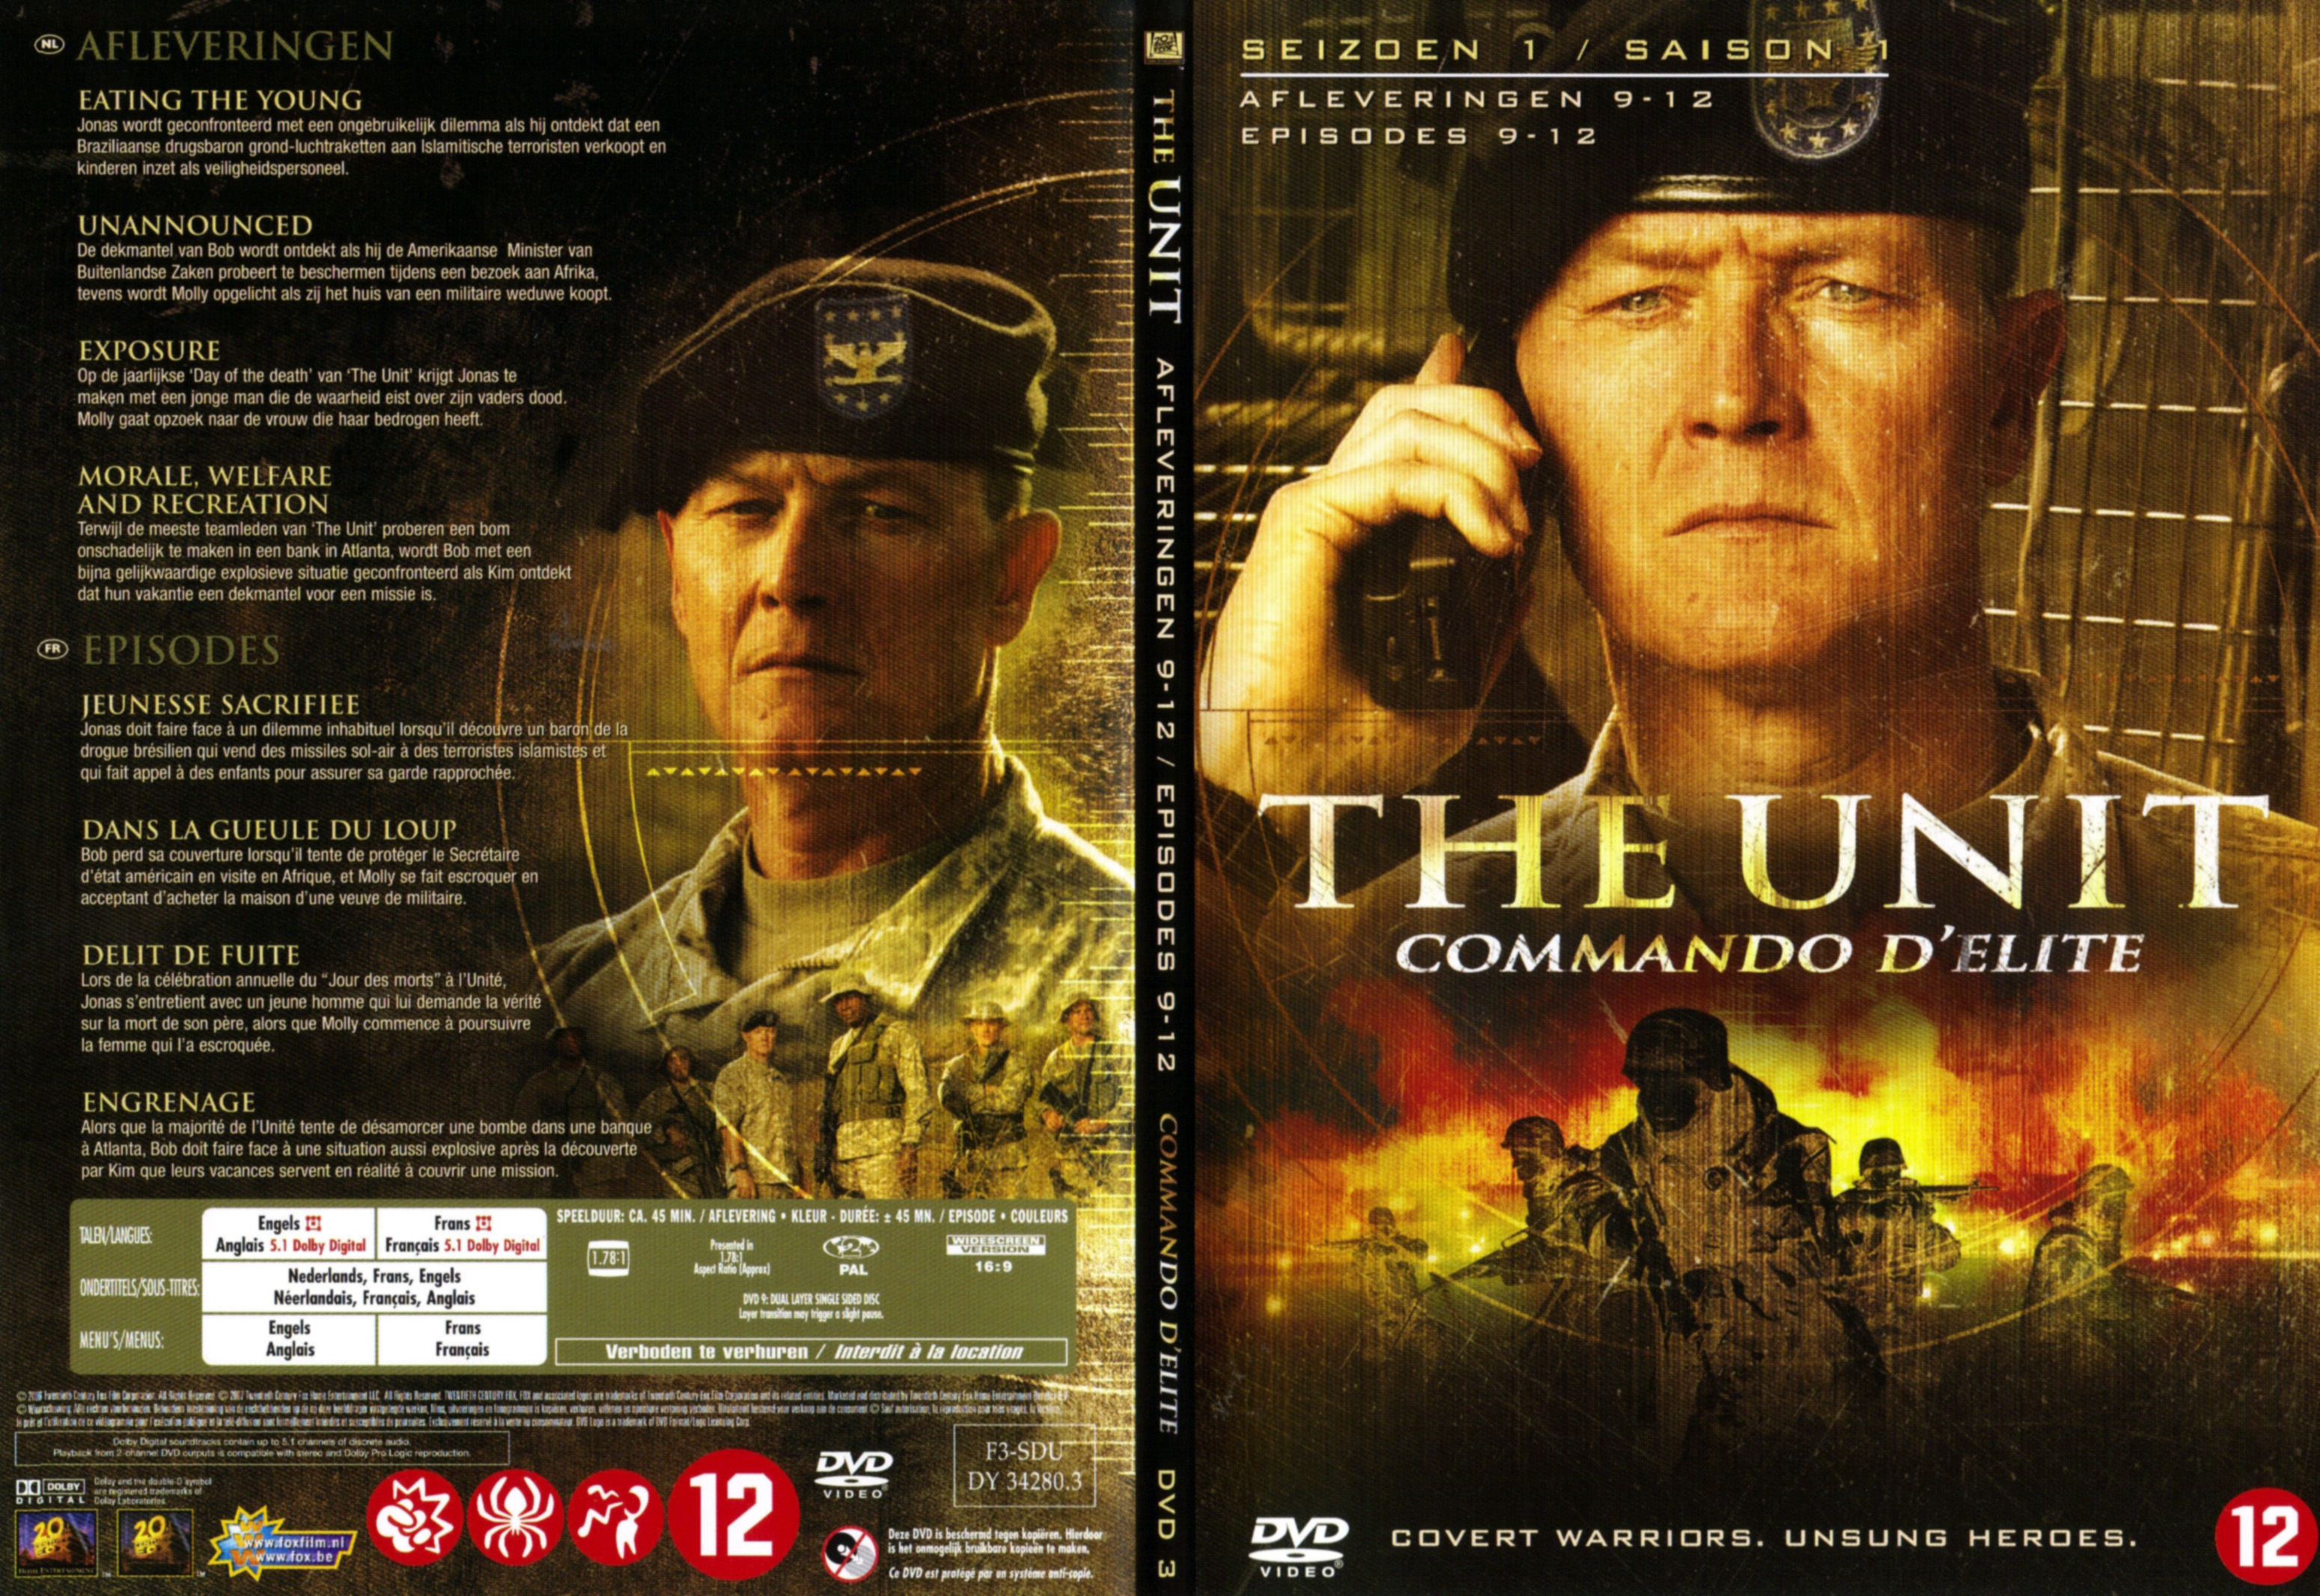 Jaquette DVD The unit saison 1 DVD 3 v2